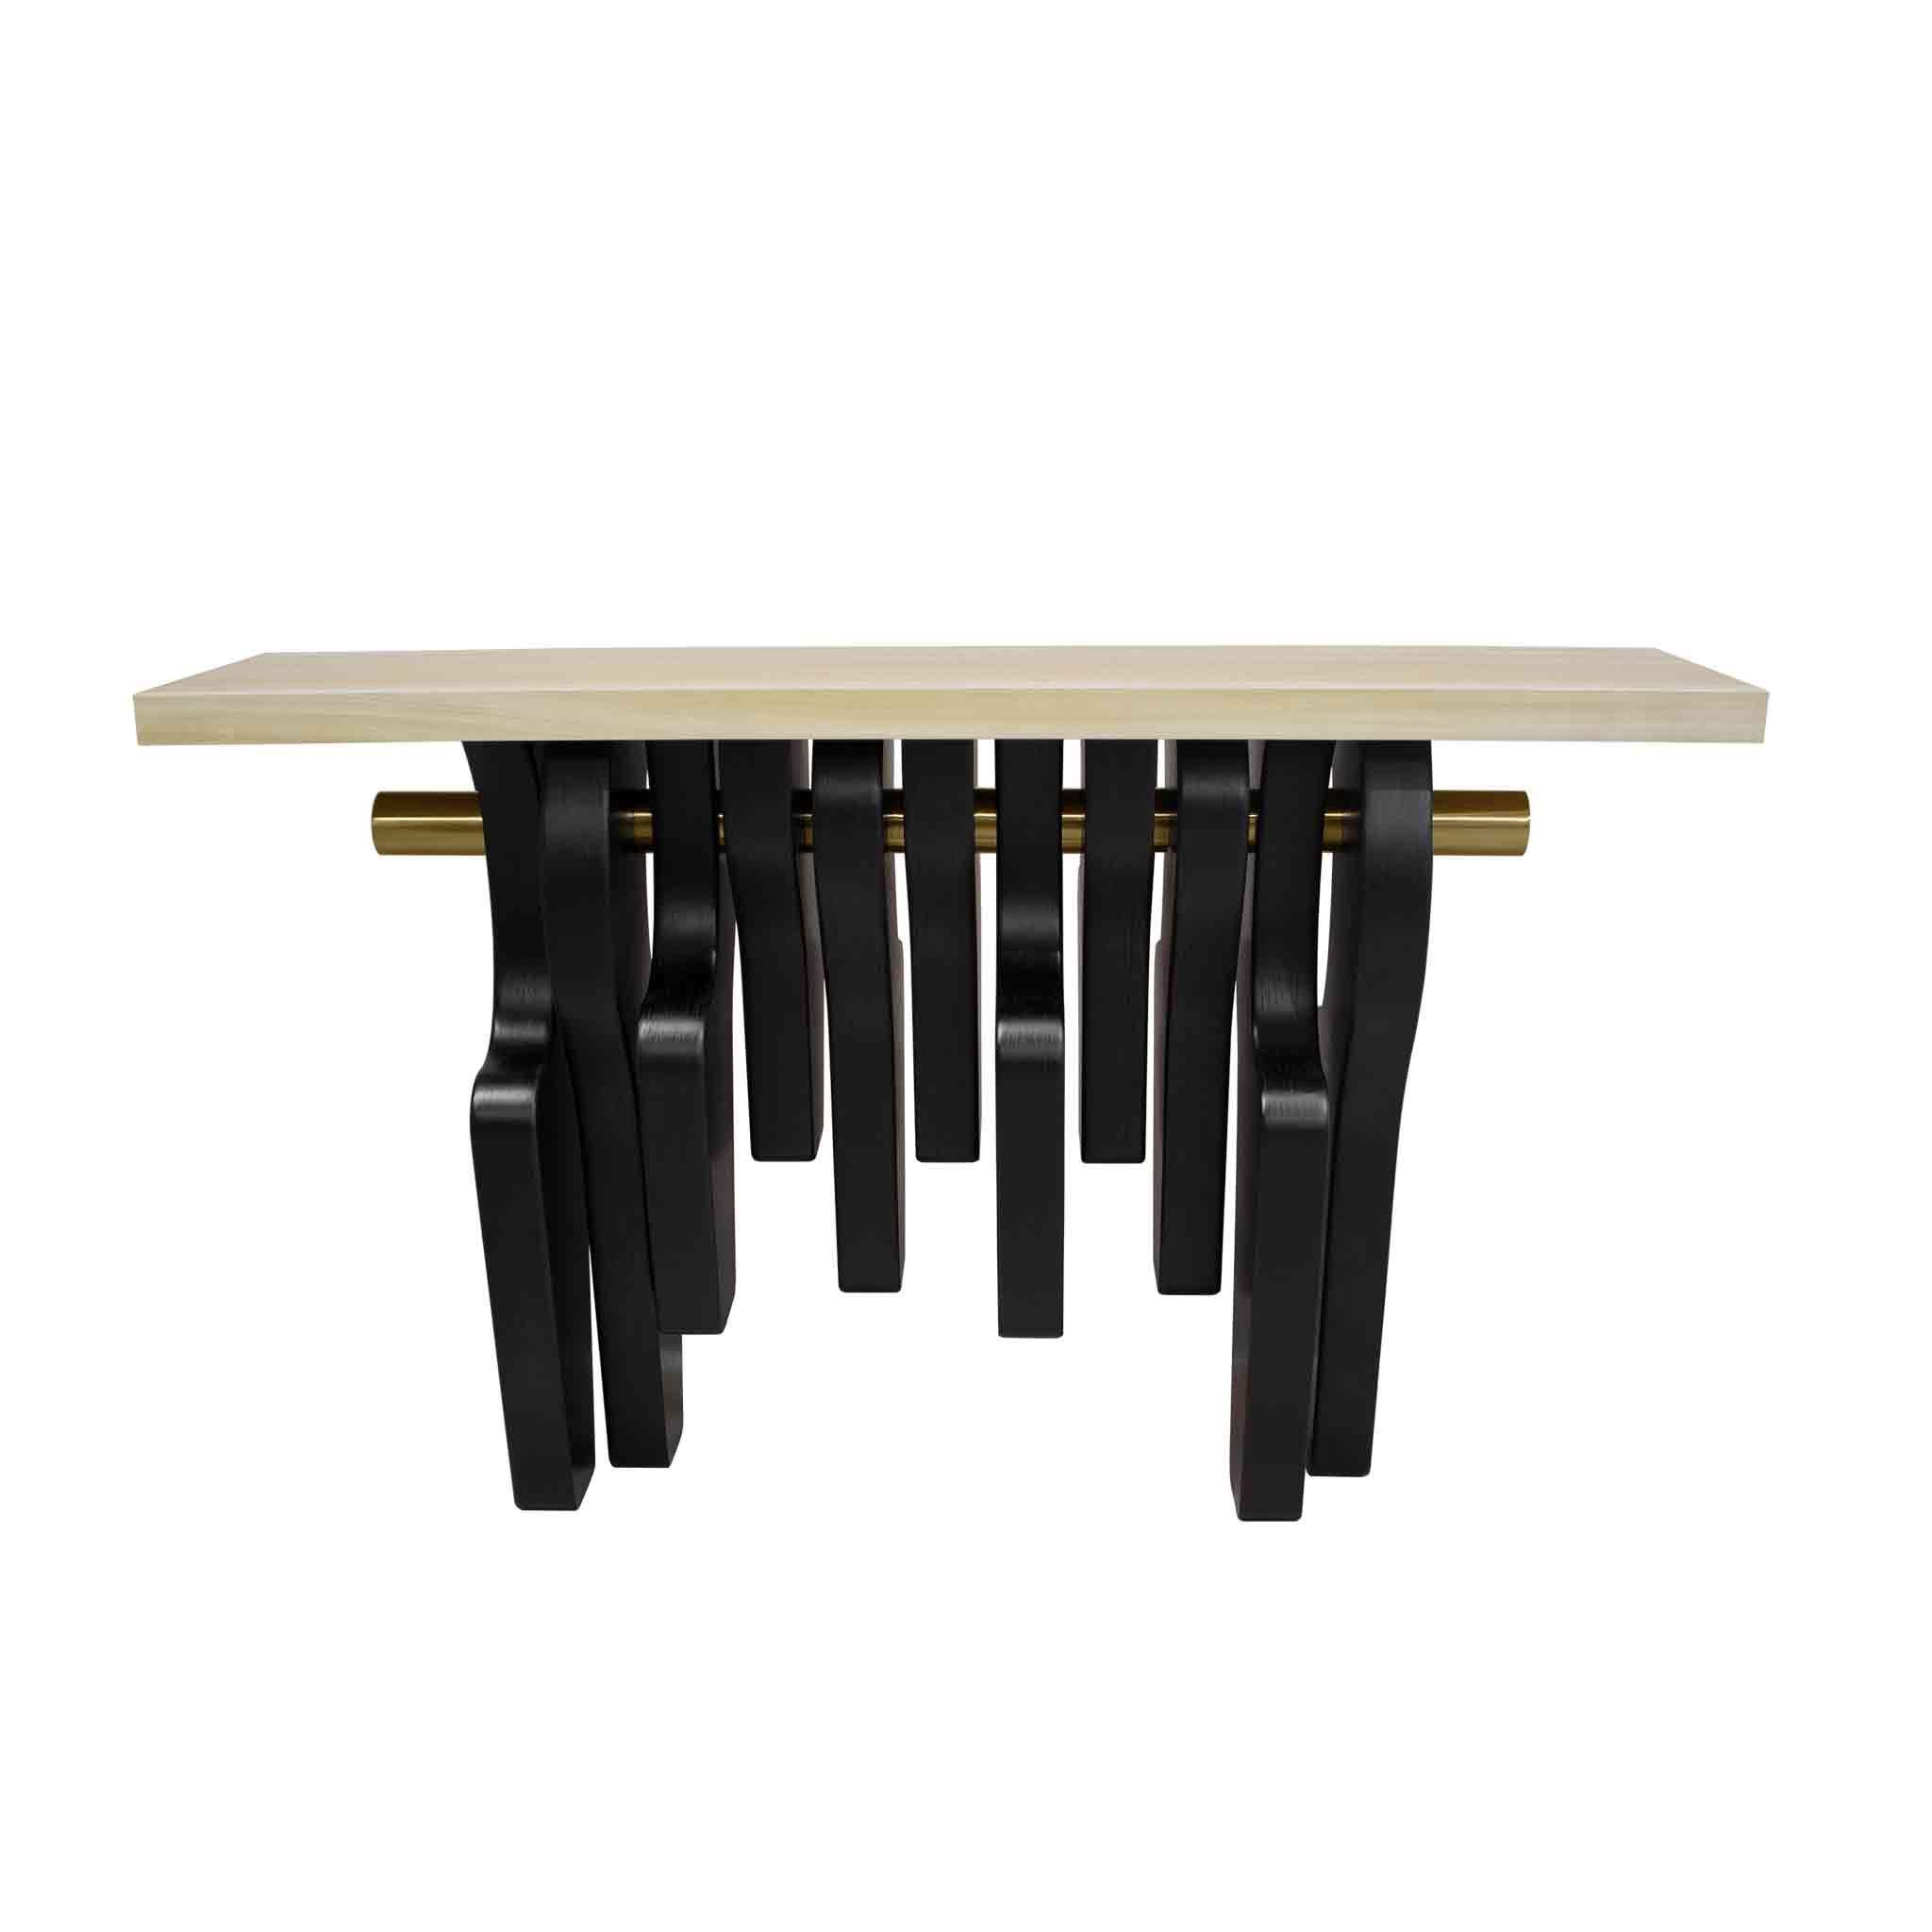 Édition limitée : La table console Cad/One est le reflet d'un design moderne. Une table console en bois fabriquée à la main est le meuble idéal pour un Living in Design moderne ou une décoration d'entrée luxueuse.

MATERIAL : Plateau en placage Bird